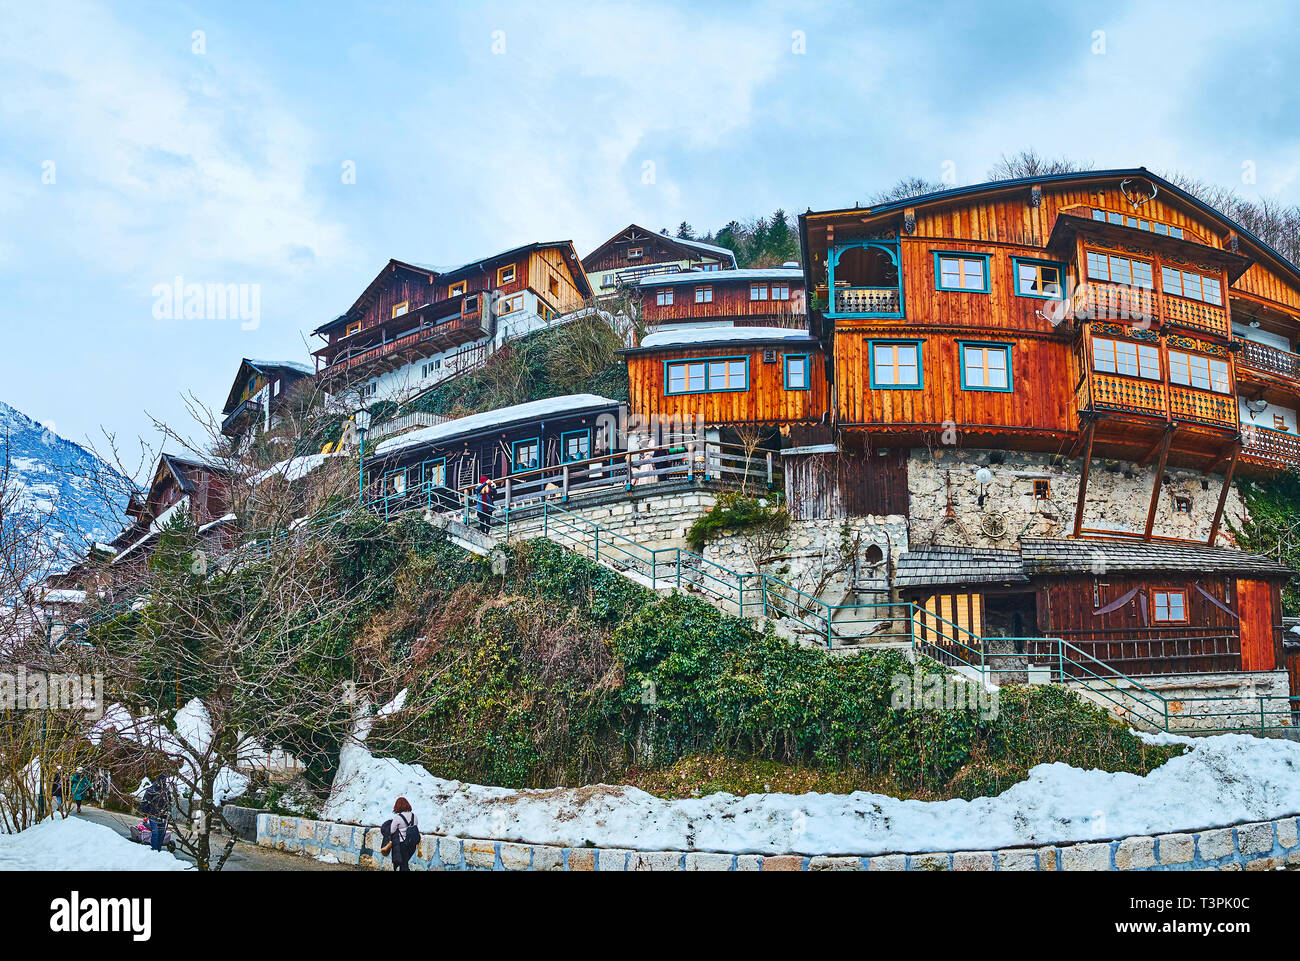 La pente raide de la montagne Salzberg est couverte de maisons traditionnelles en bois de Hallstatt, Salzkammergut, Autriche. Banque D'Images